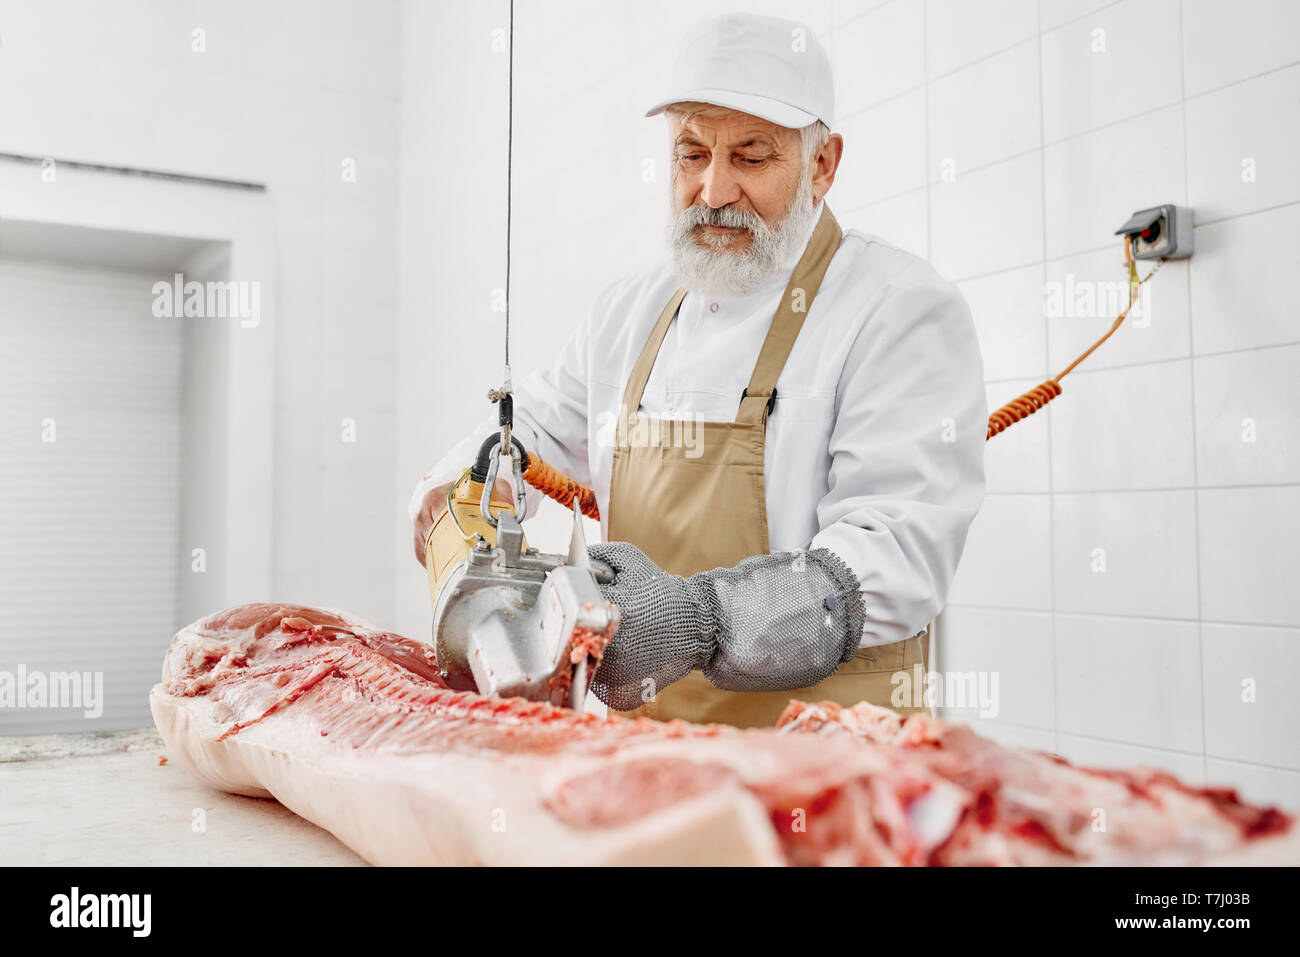 Stattliche professional Butcher, schneiden Wirbel und Knochen von Schweinefleisch Schlachtkörper mit einem elektrischen Messer auf den Tisch. Arbeiter in spezielle Handschuhe, weiße Uniform und Kappe, braun Schürze. Stockfoto